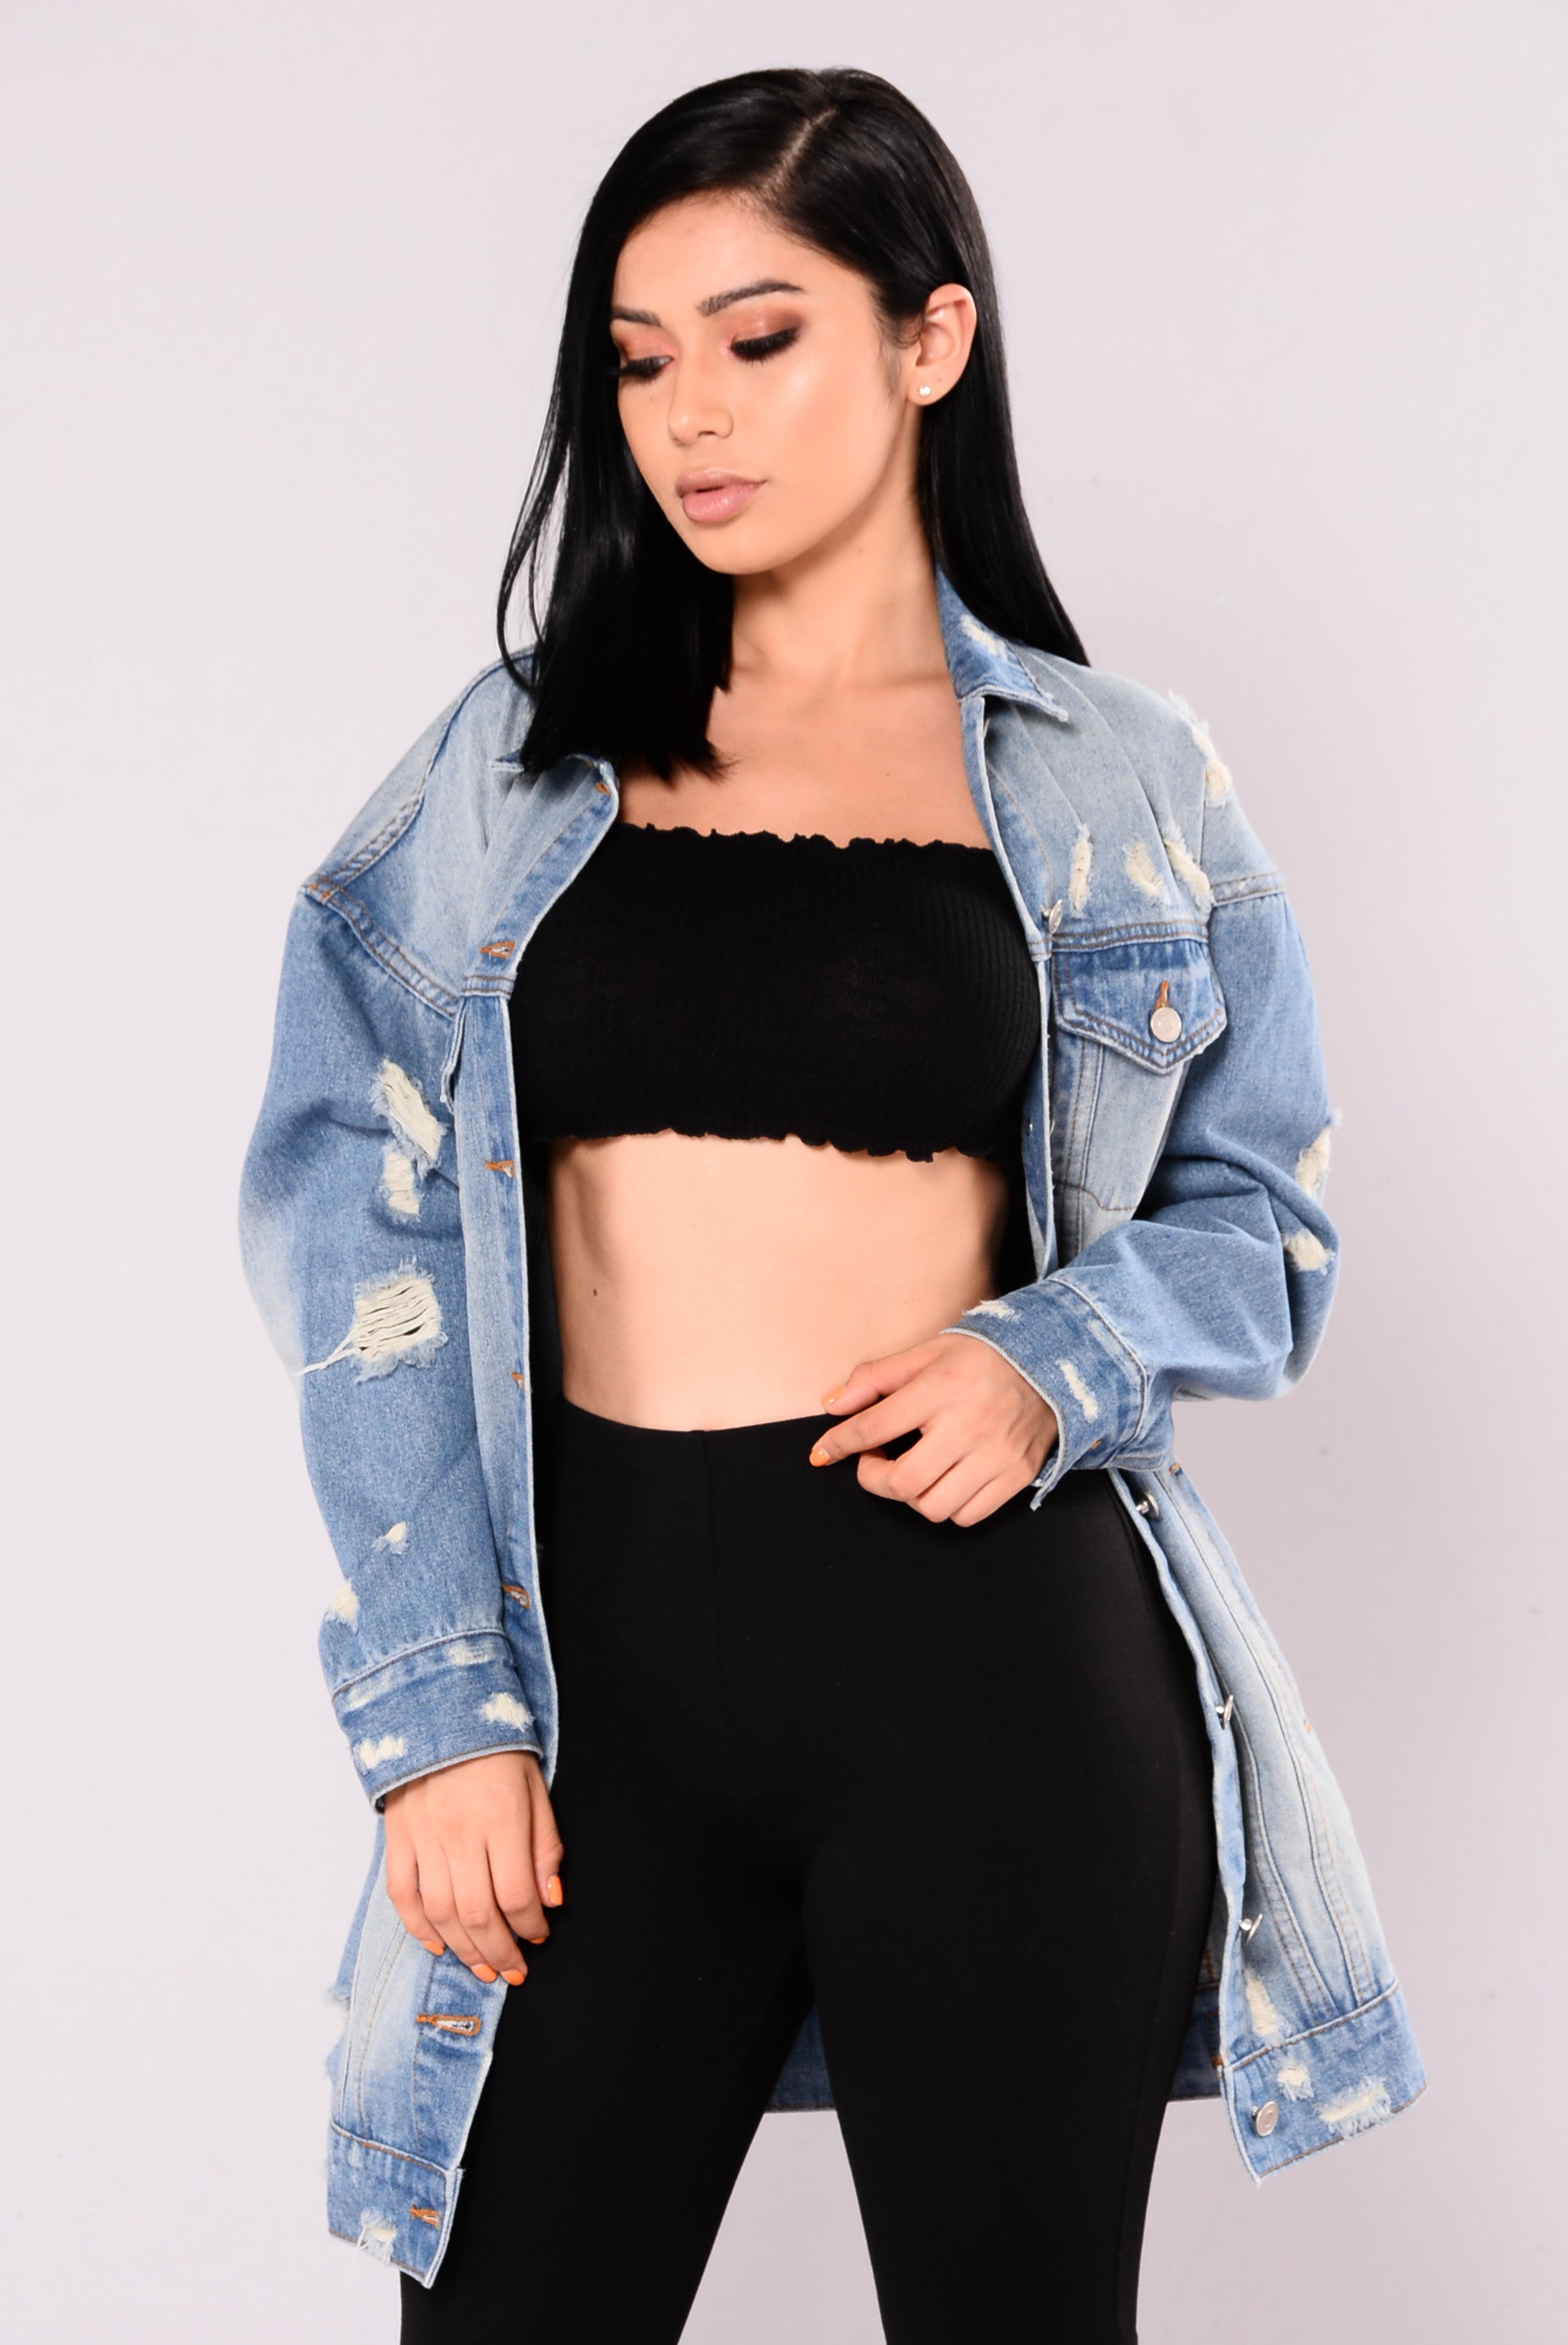 Fashion Nova Cropped Denim Jacket size M | eBay